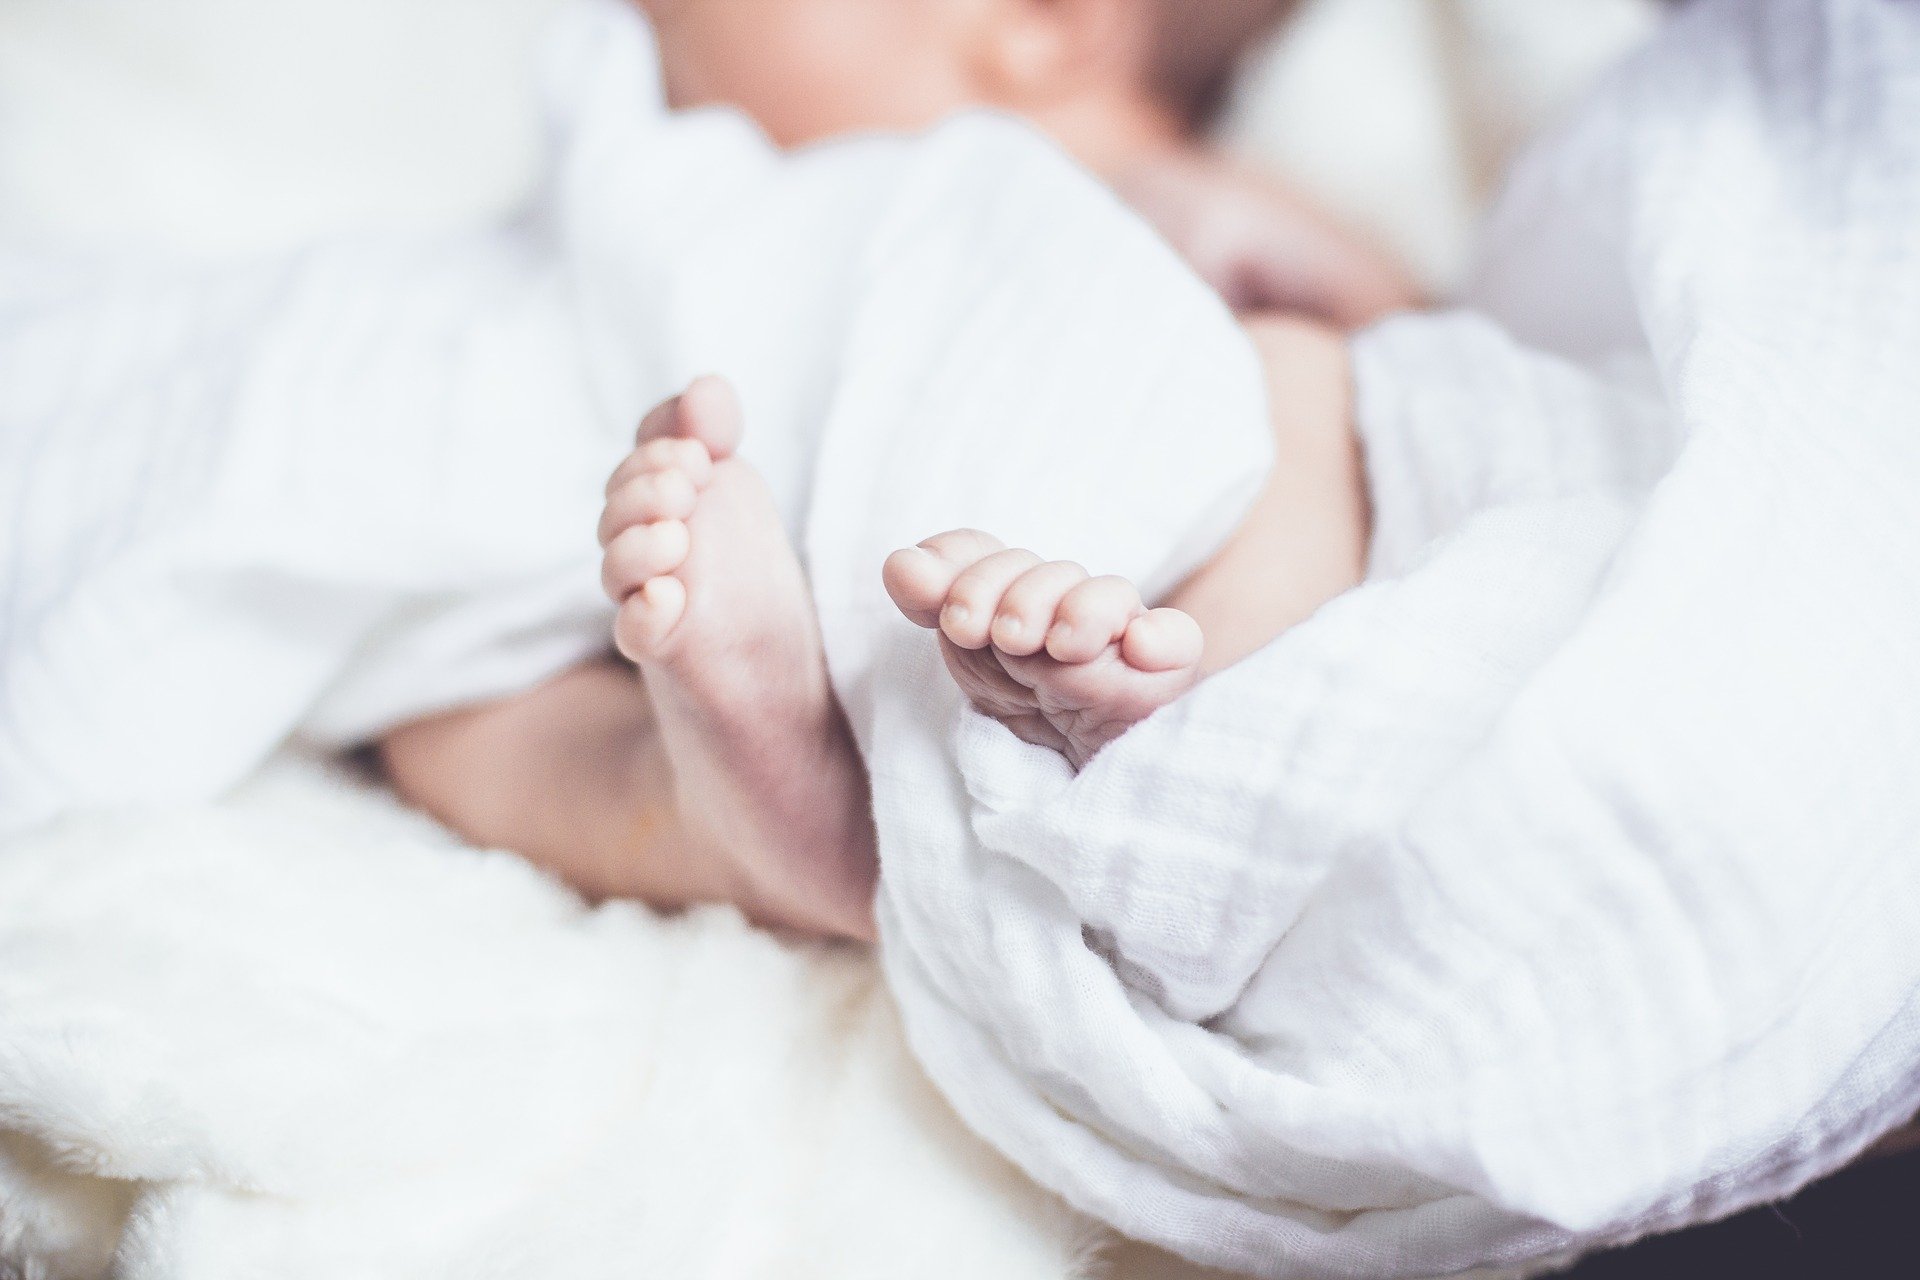 4611 рождений малышей зарегистрировали с января по октябрь в Смоленской области